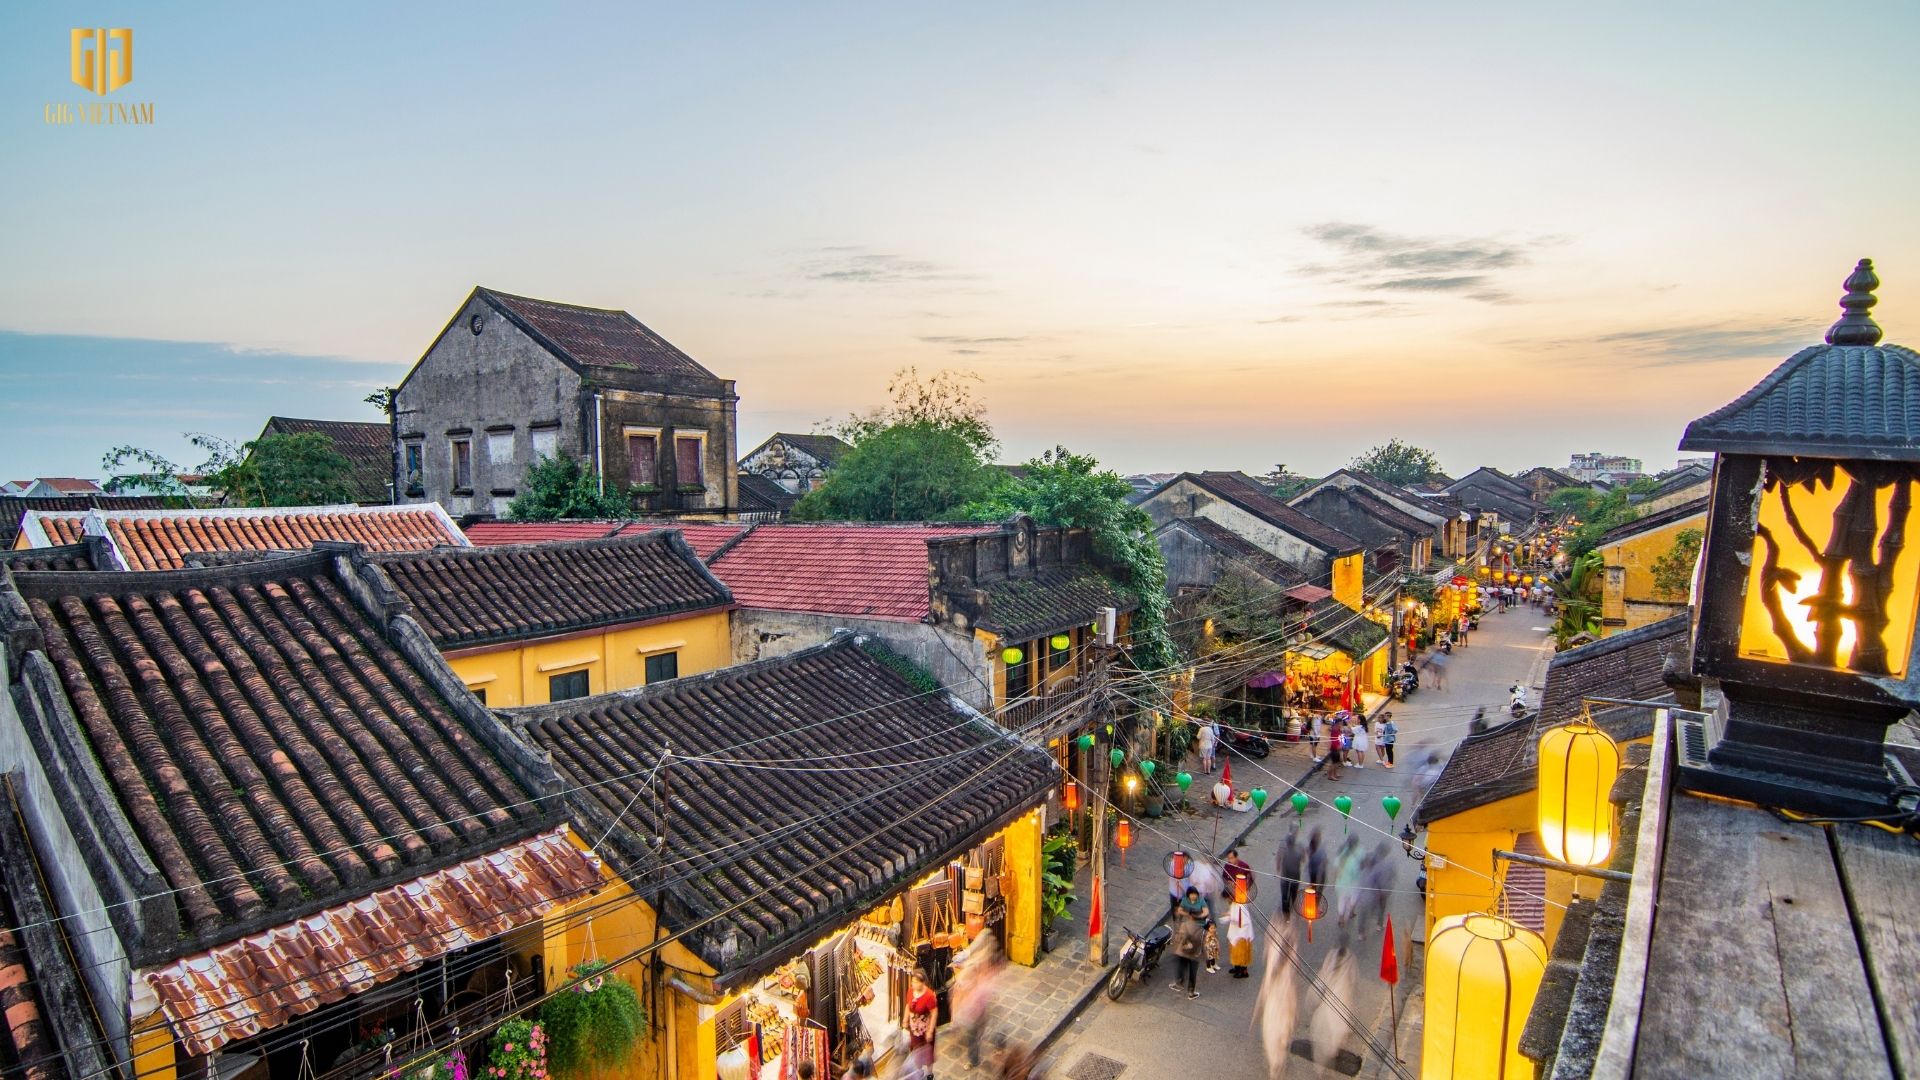 Tháng 6 nên đi du lịch ở đâu? Top 10 các tour du lịch tháng 6 hàng đầu Việt Nam - Hội An